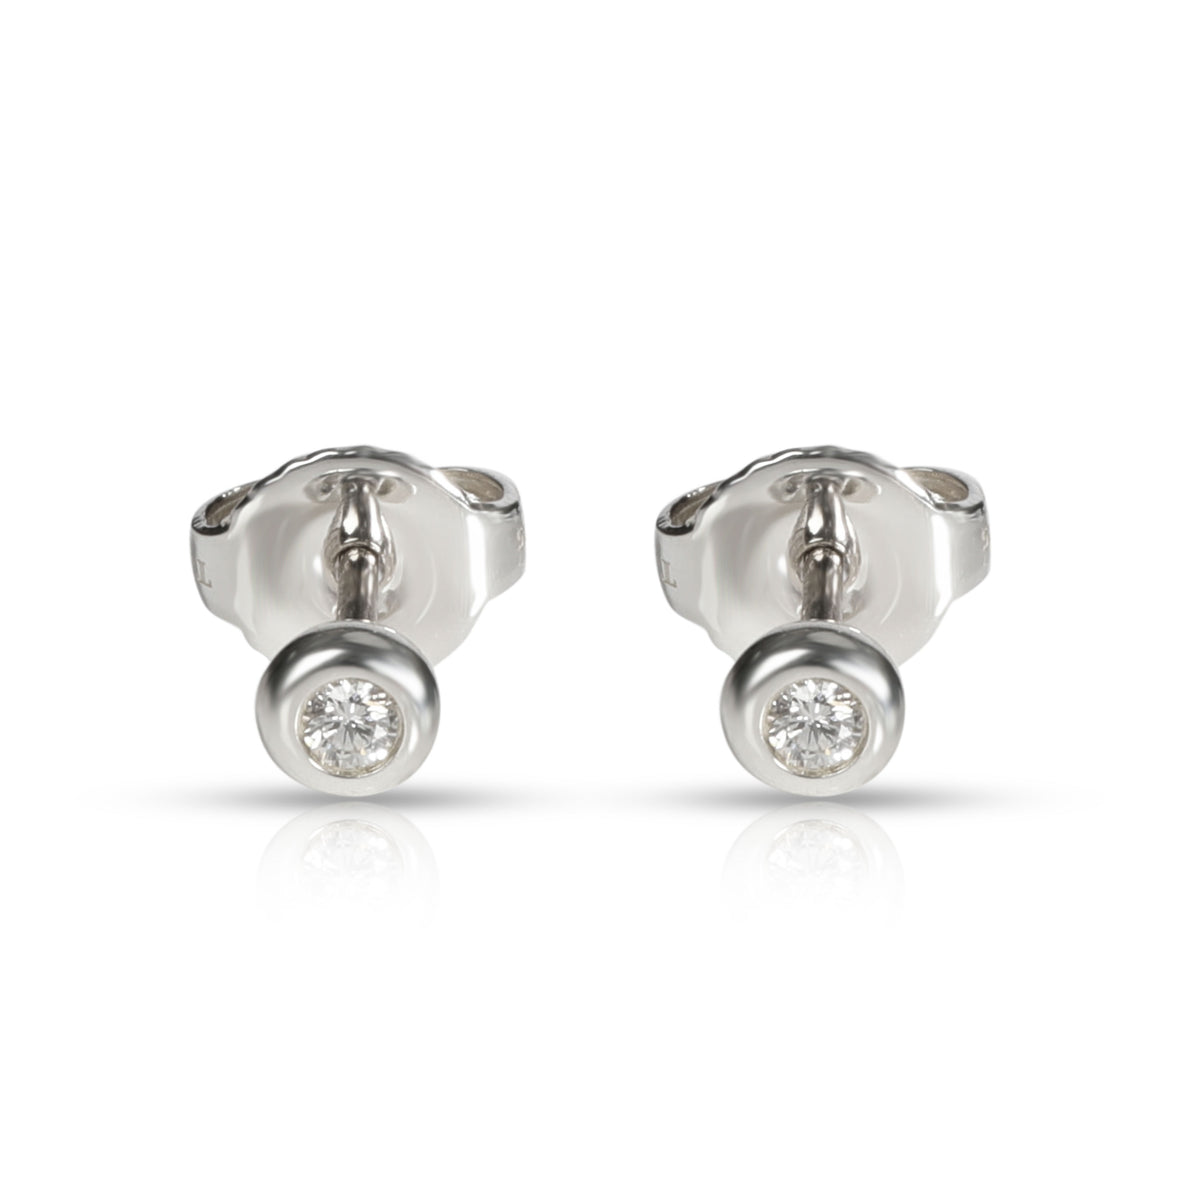 Tiffany & Co. Else Peretti Diamond Stud Earring in  Sterling Silver 0.06 CTW